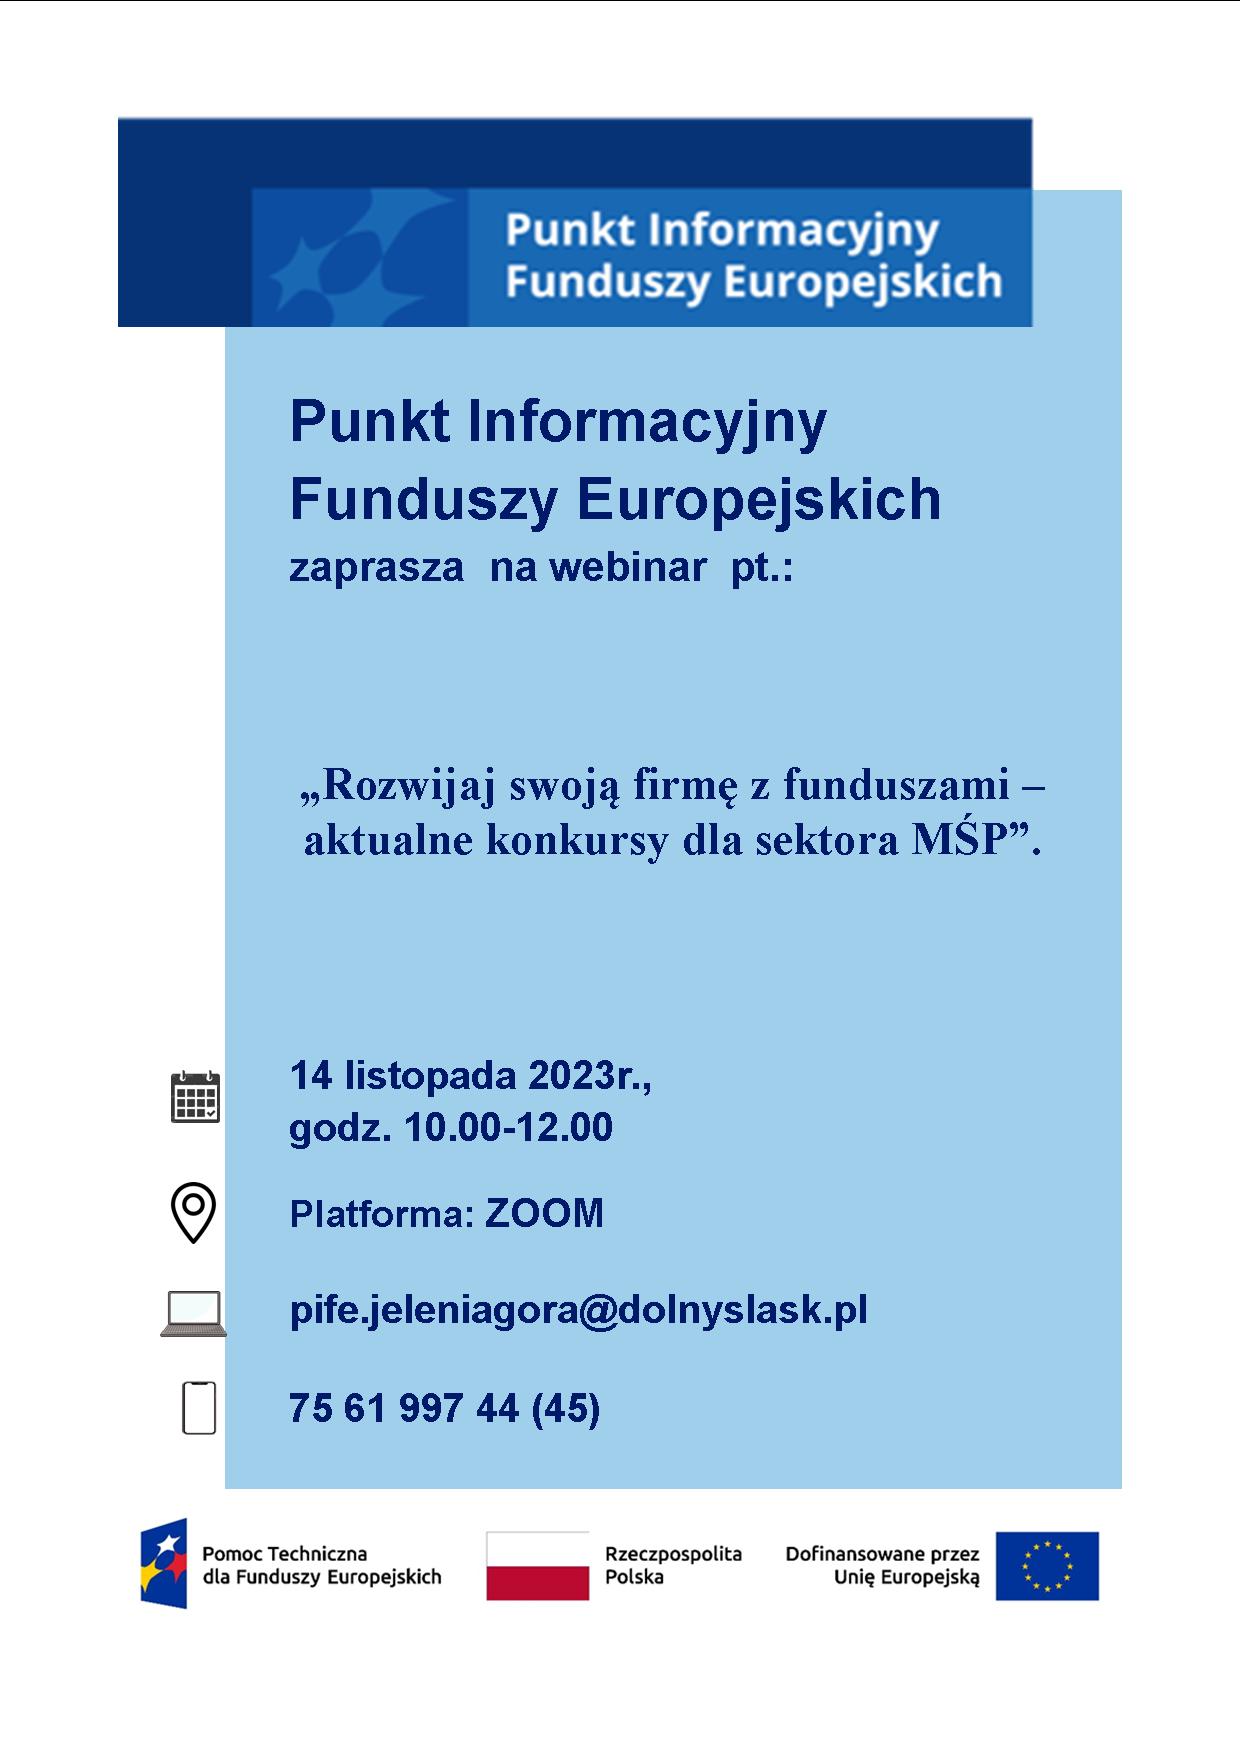 Punkt Informacyjny Funduszy Europejskich w Jeleniej Górze organizuje WEBINARIUM pt. „Rozwijaj swoją firmę z funduszami – aktualne konkursy dla sektora MŚP”.